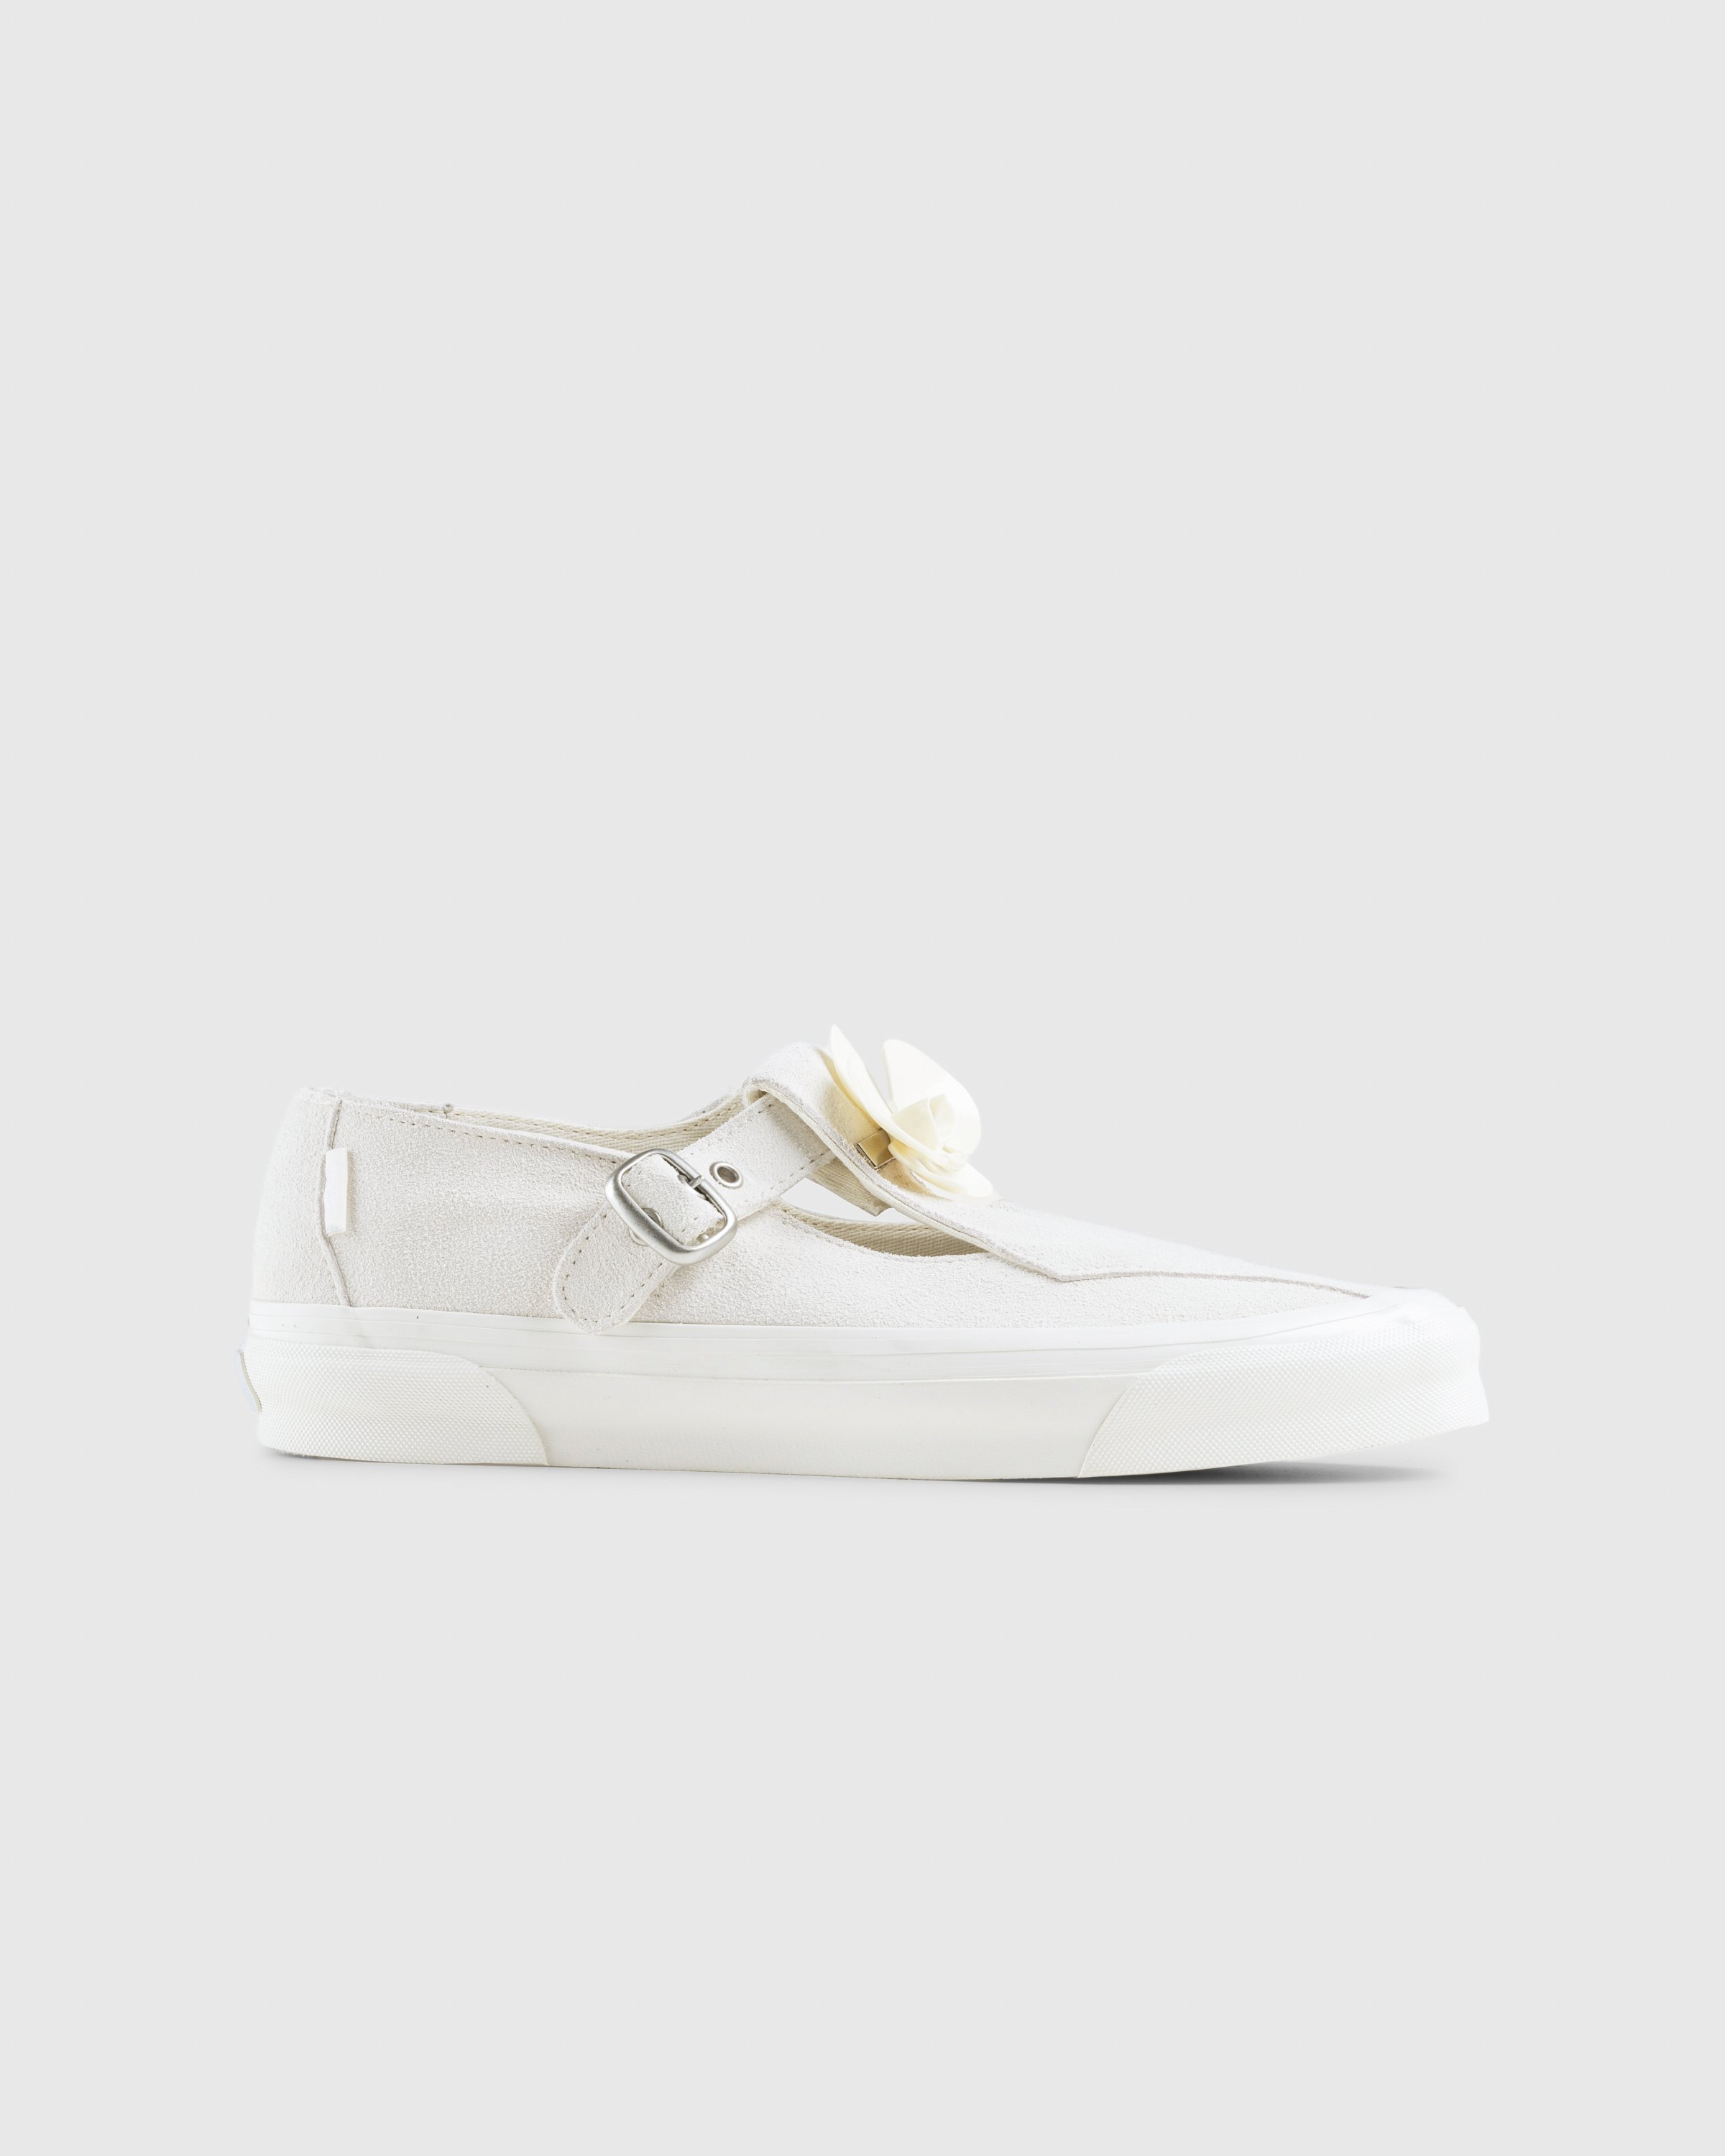 Vans - OG Style 93 LX Marshmallow - Footwear - White - Image 1